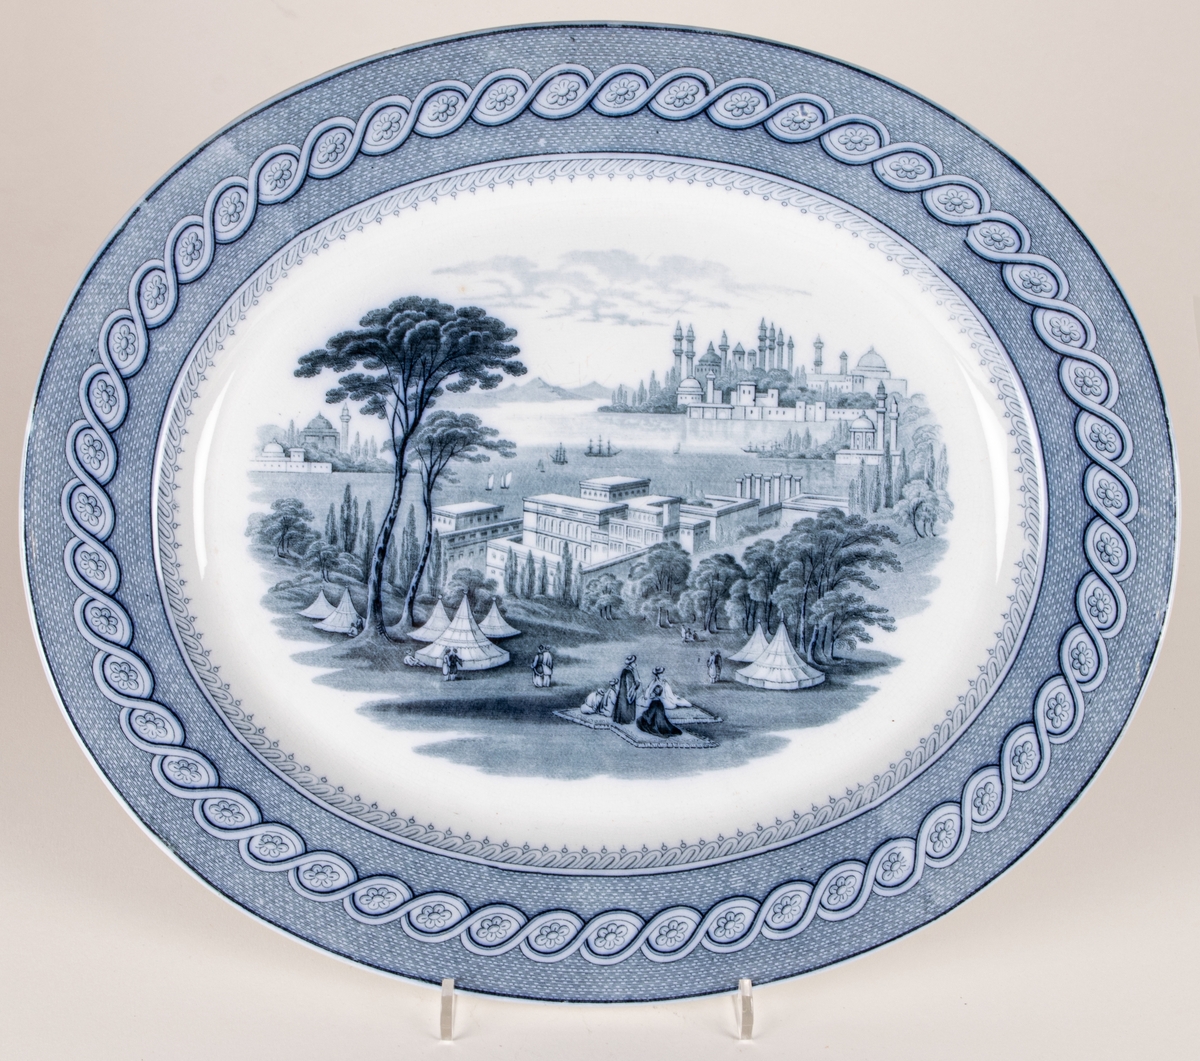 Stekfat, ovalt, fajans, blå dekor, stämplat med kartusch märkt Byzantium JR & C.
John Ridgway & Co, Shelton, England 1841-1855.